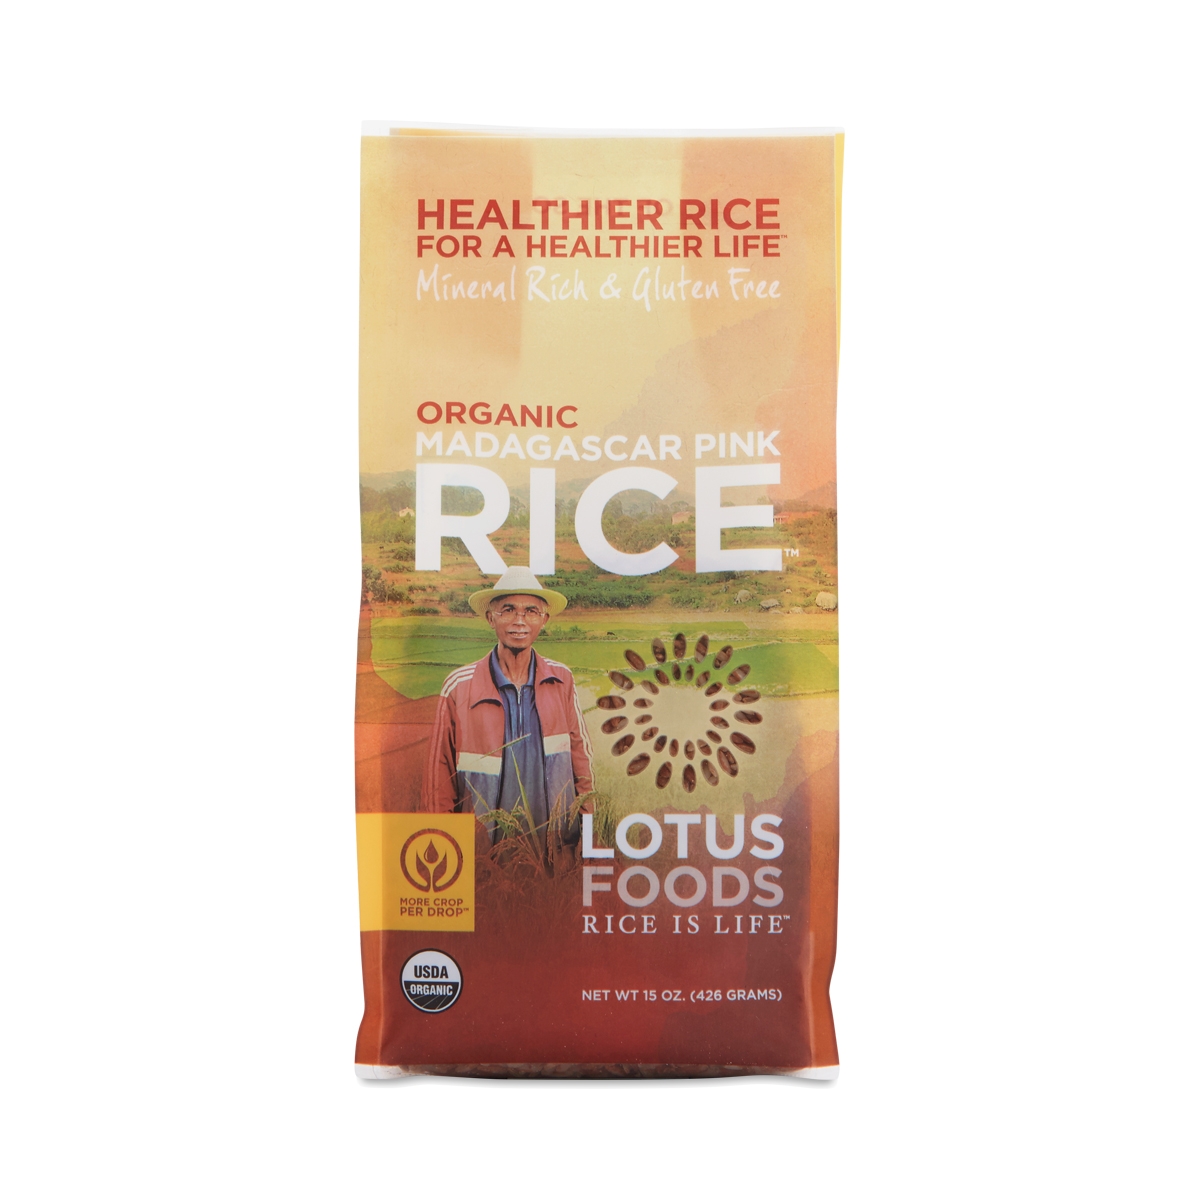 Lotus Foods Organic Madagascar Pink Rice 15 oz bag